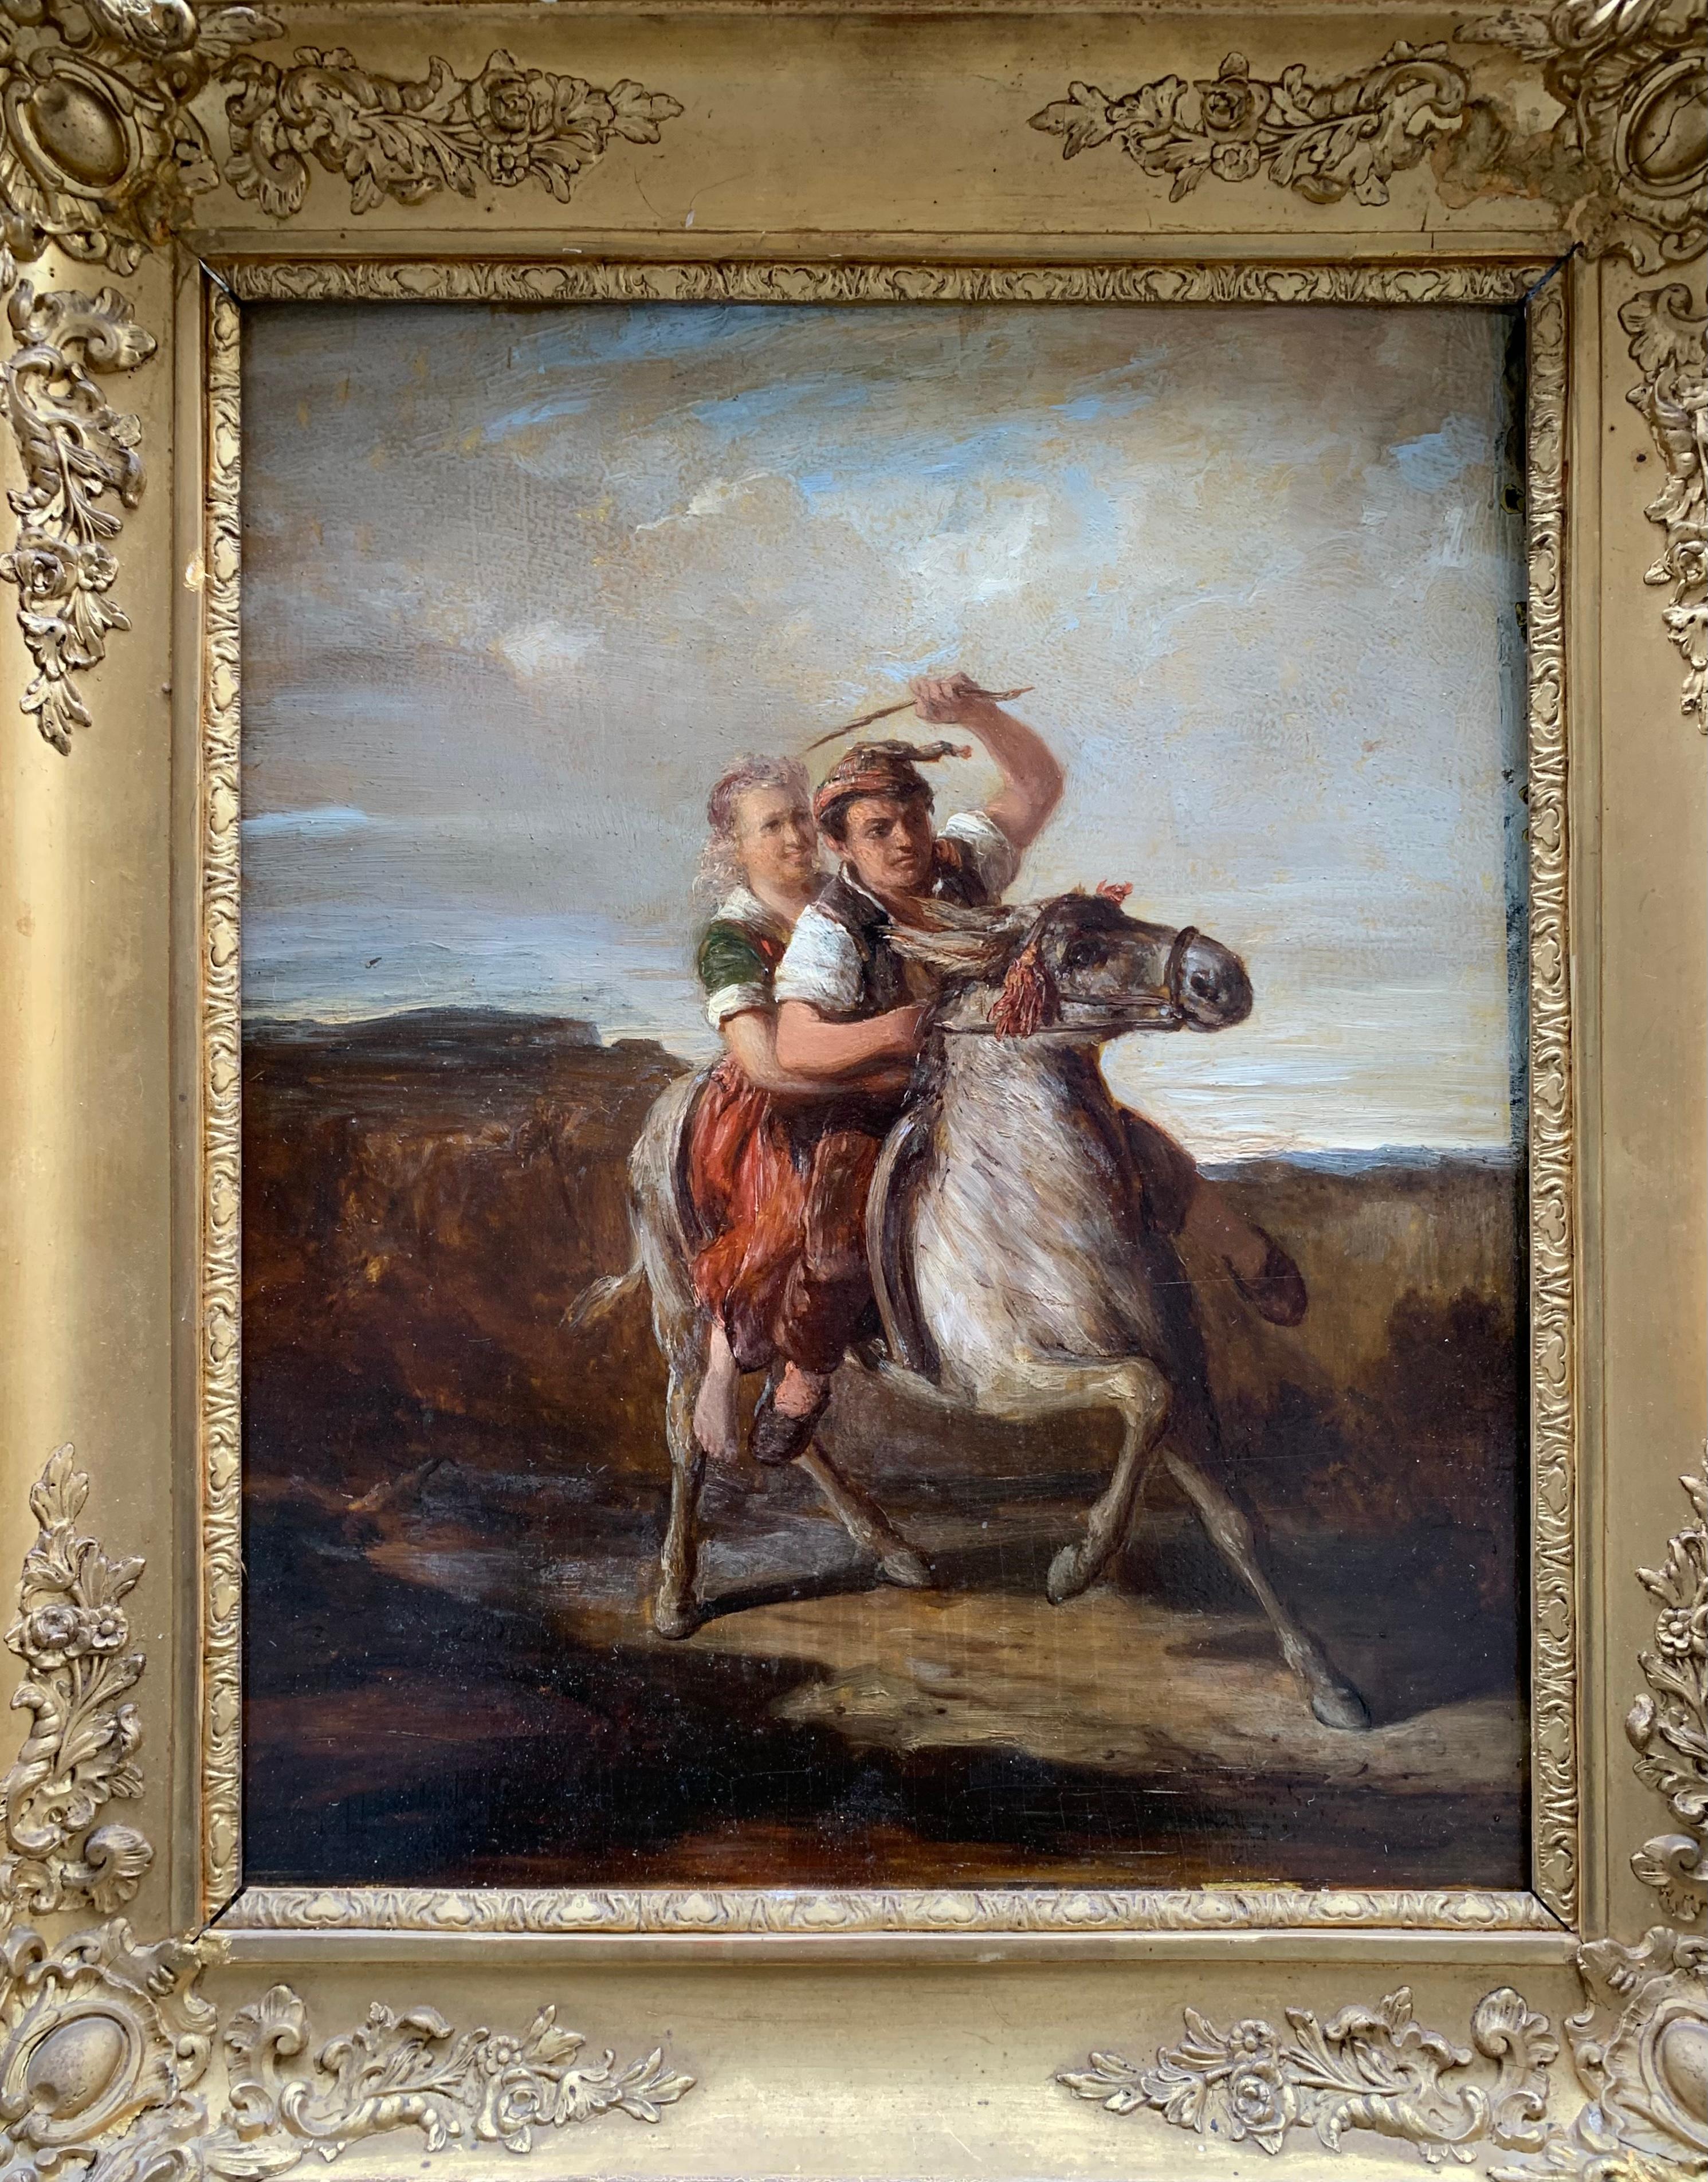 Ein Junge und ein Mädchen in ethnografischen Kostümen, wahrscheinlich Savoyarden, reiten auf einem Esel. 
Die Szene spielt mitten auf dem Lande mit Bergen im Hintergrund.
Stil: Romantik. 
Technik: Öl auf Tafel, mit Applikationen aus Baumwollgewebe